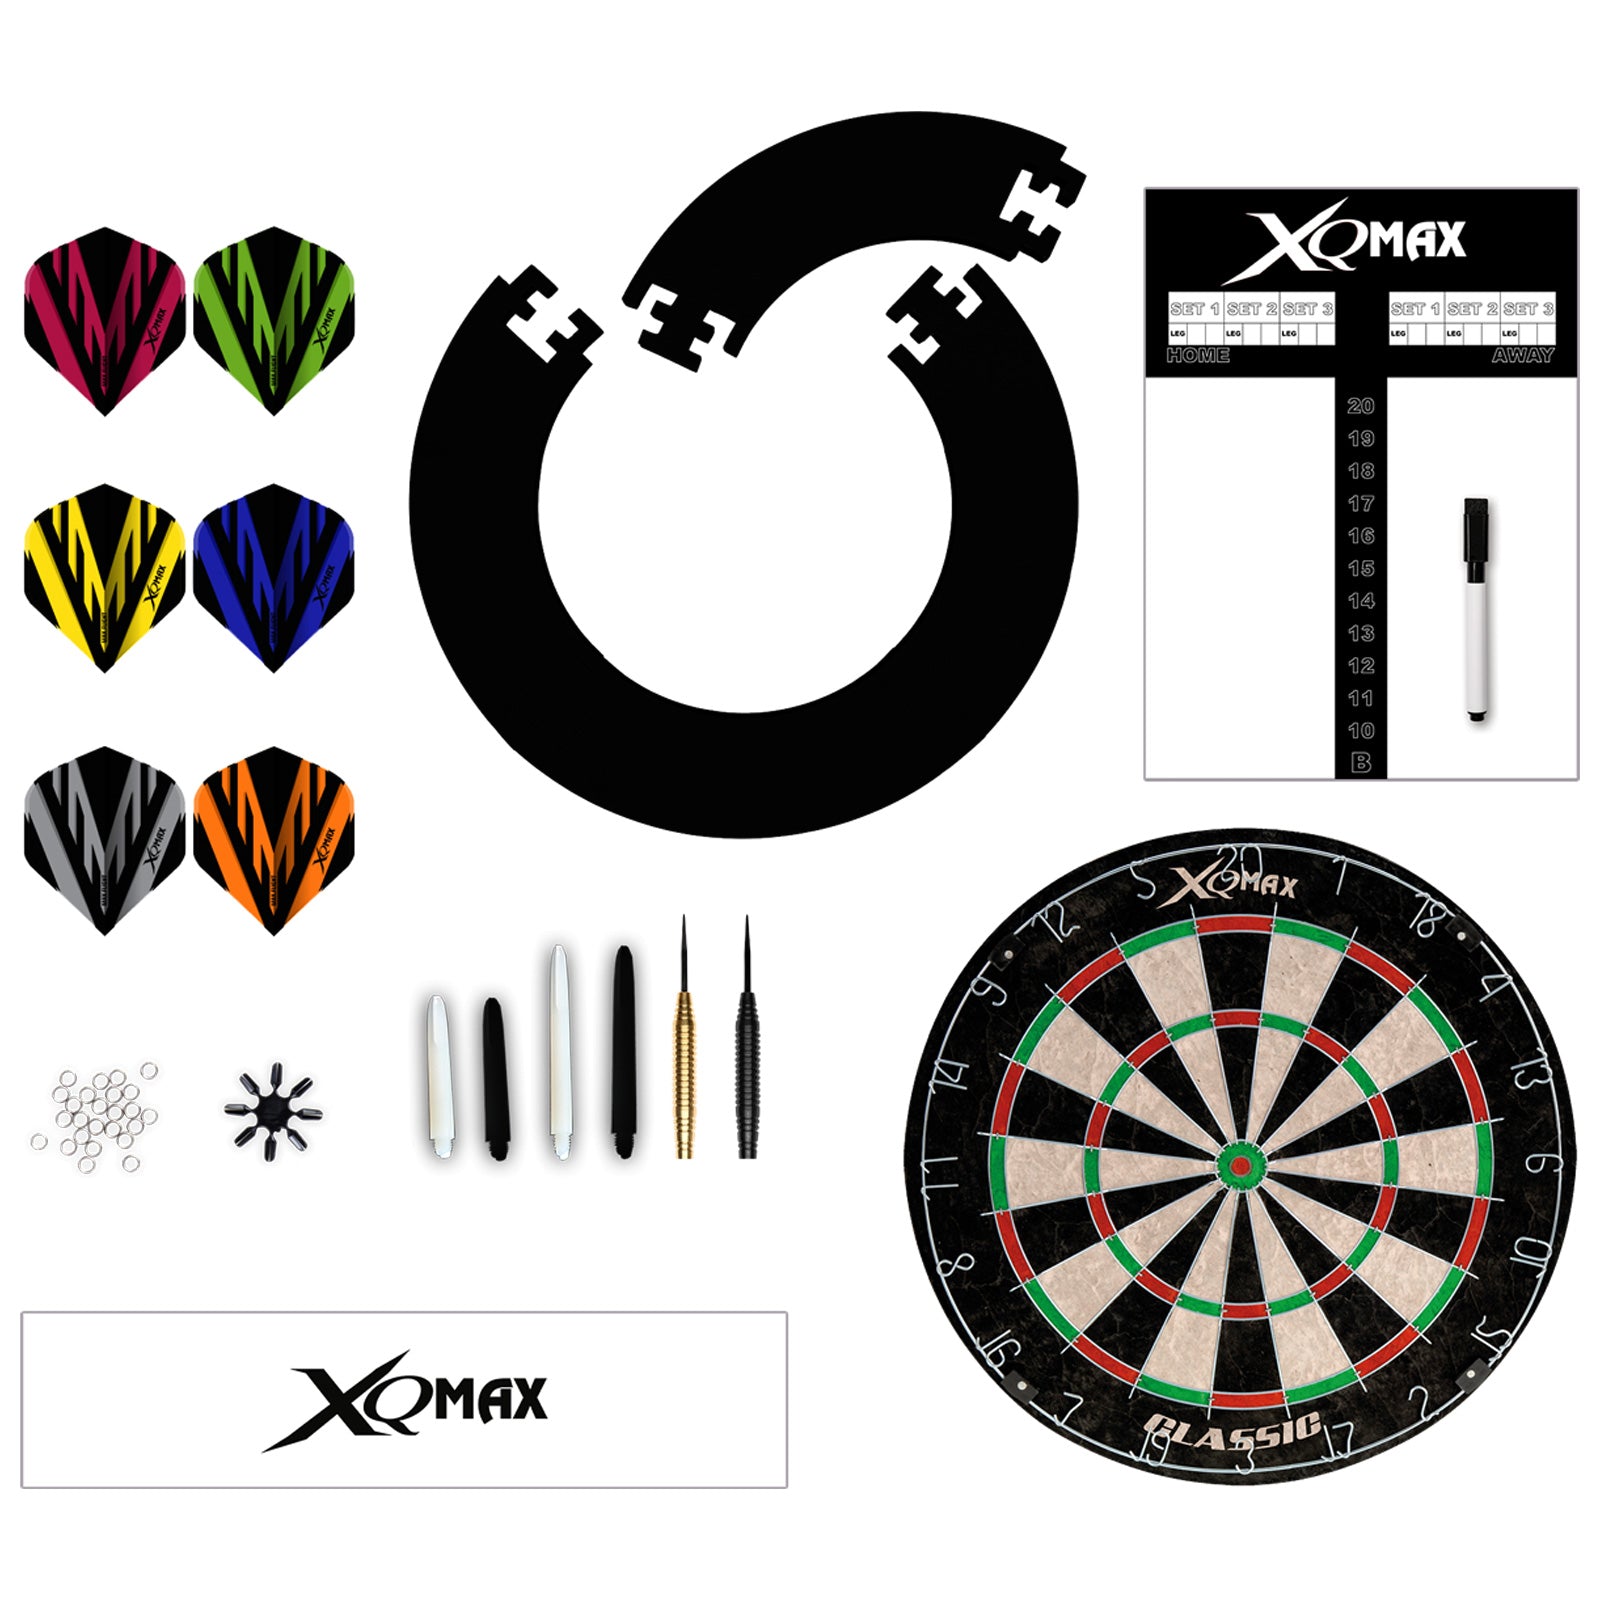 XQ Max Tournament Dart Set